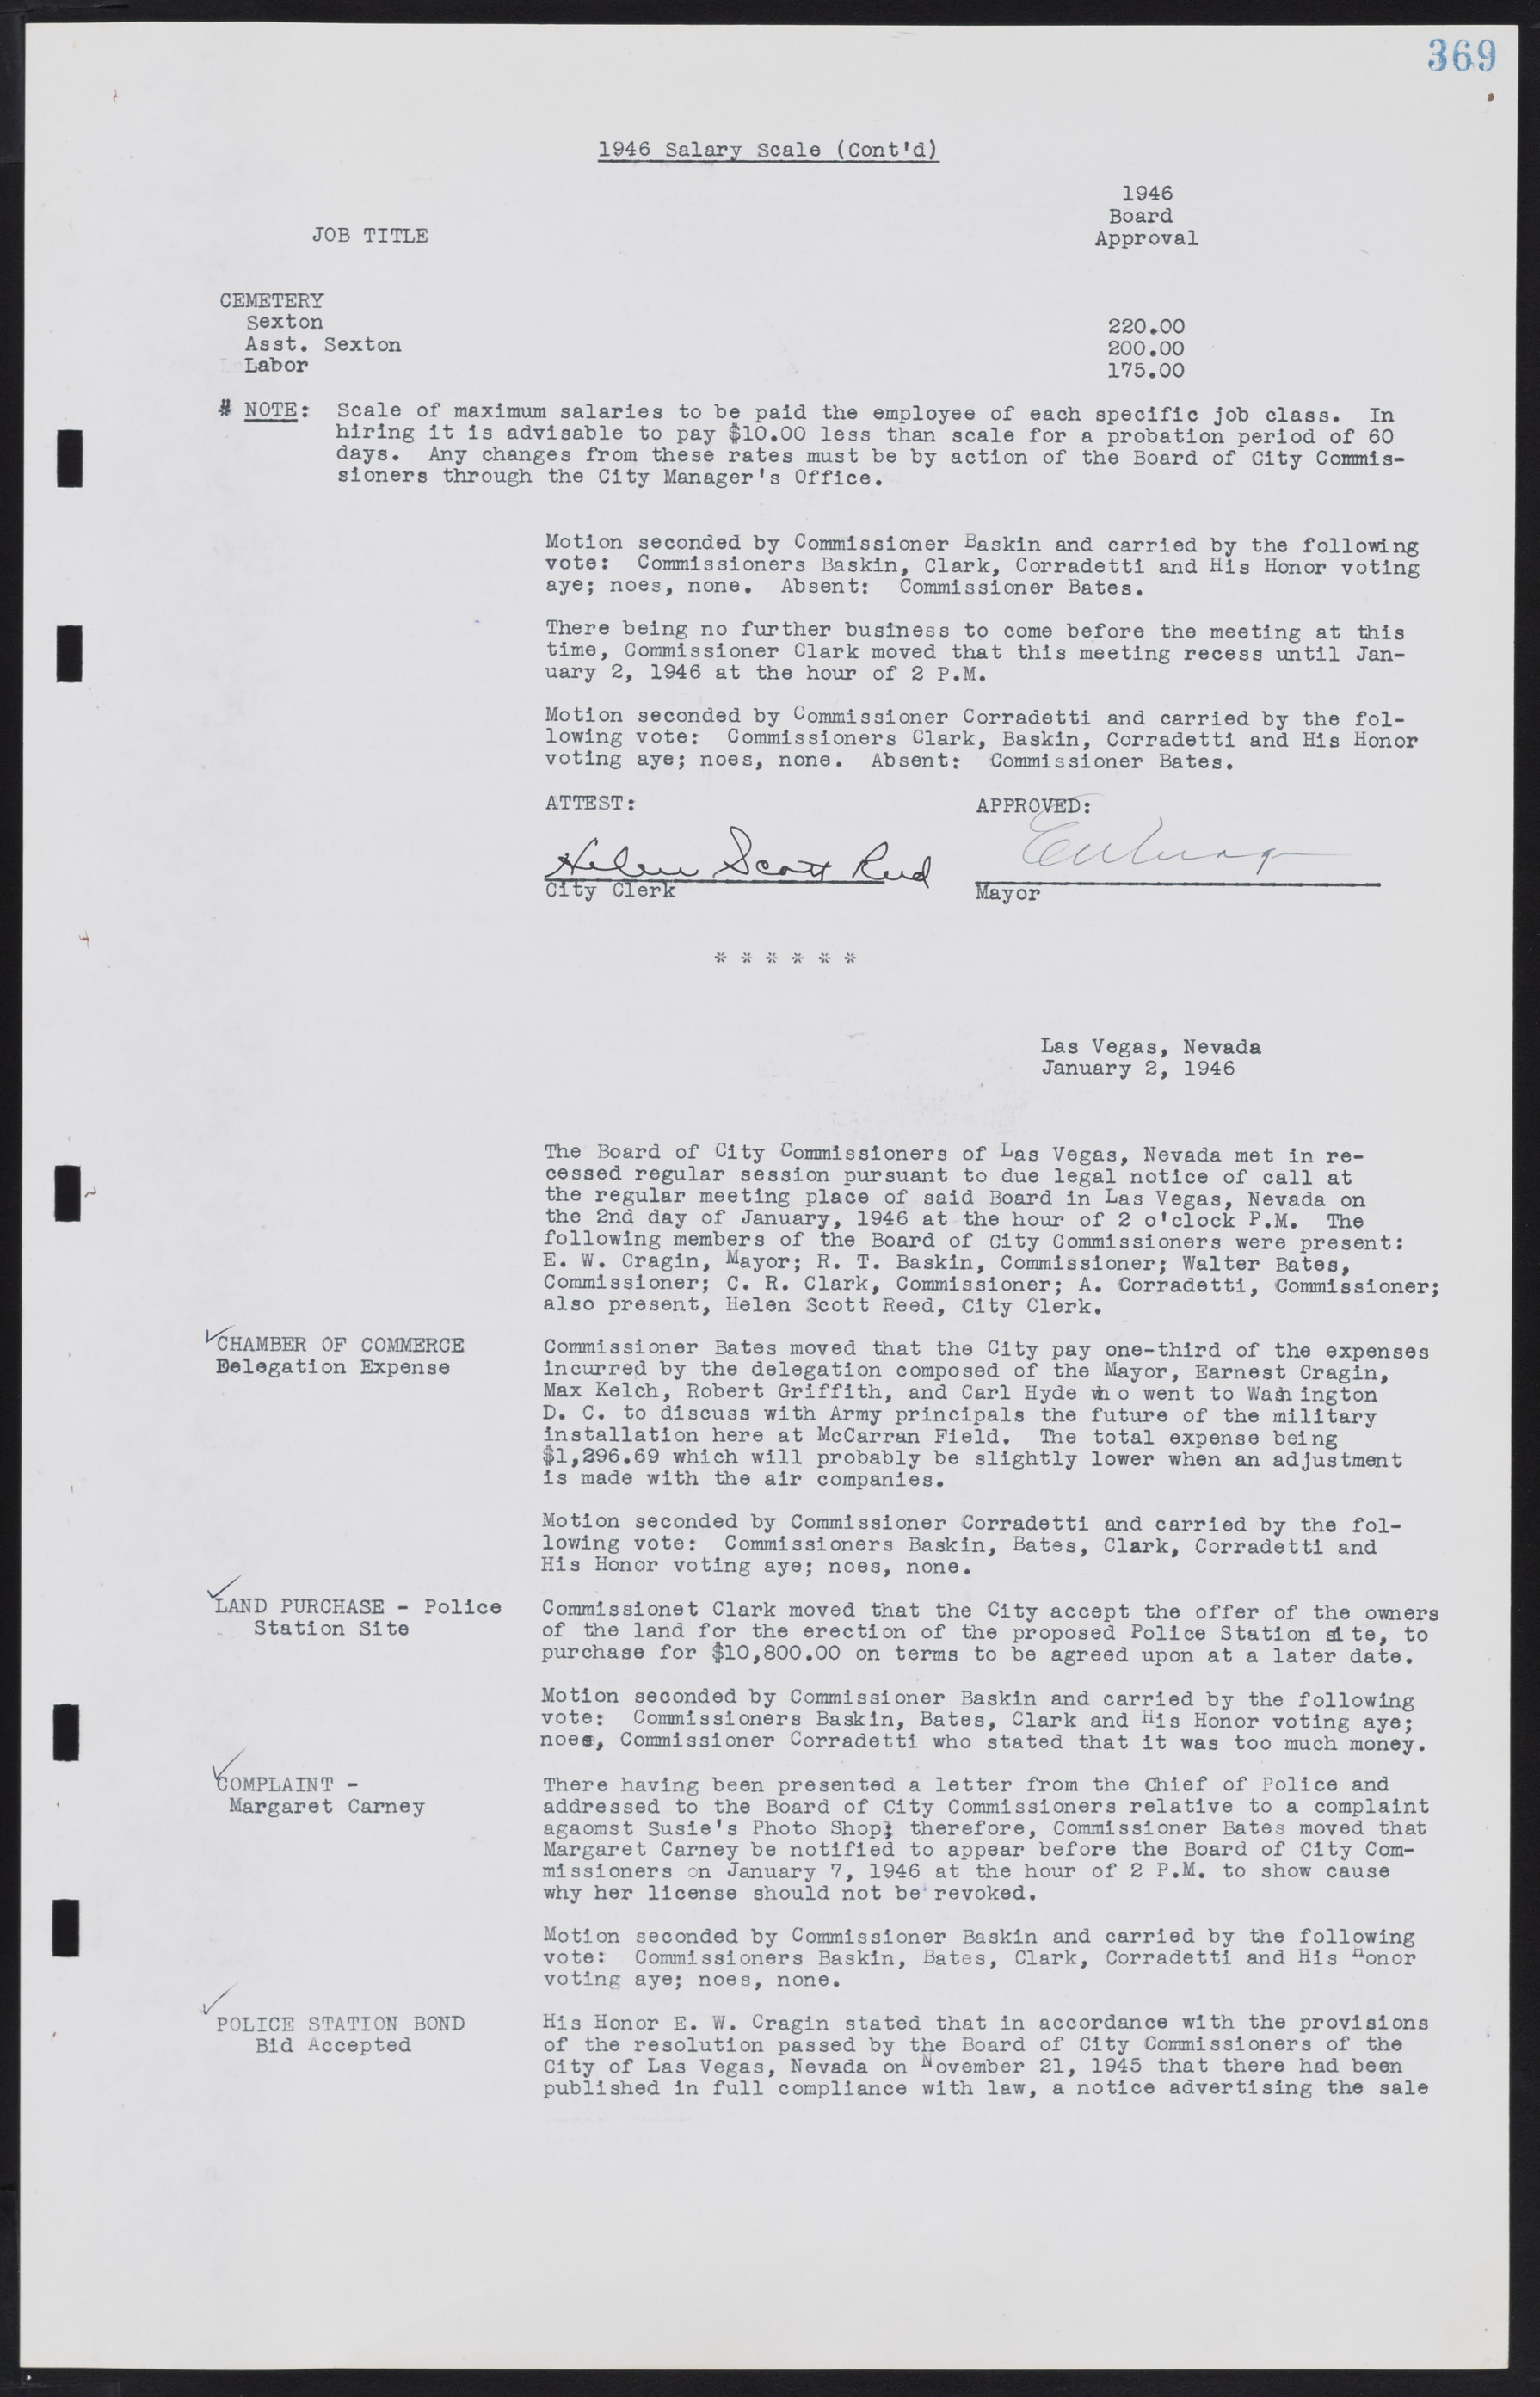 Las Vegas City Commission Minutes, August 11, 1942 to December 30, 1946, lvc000005-396